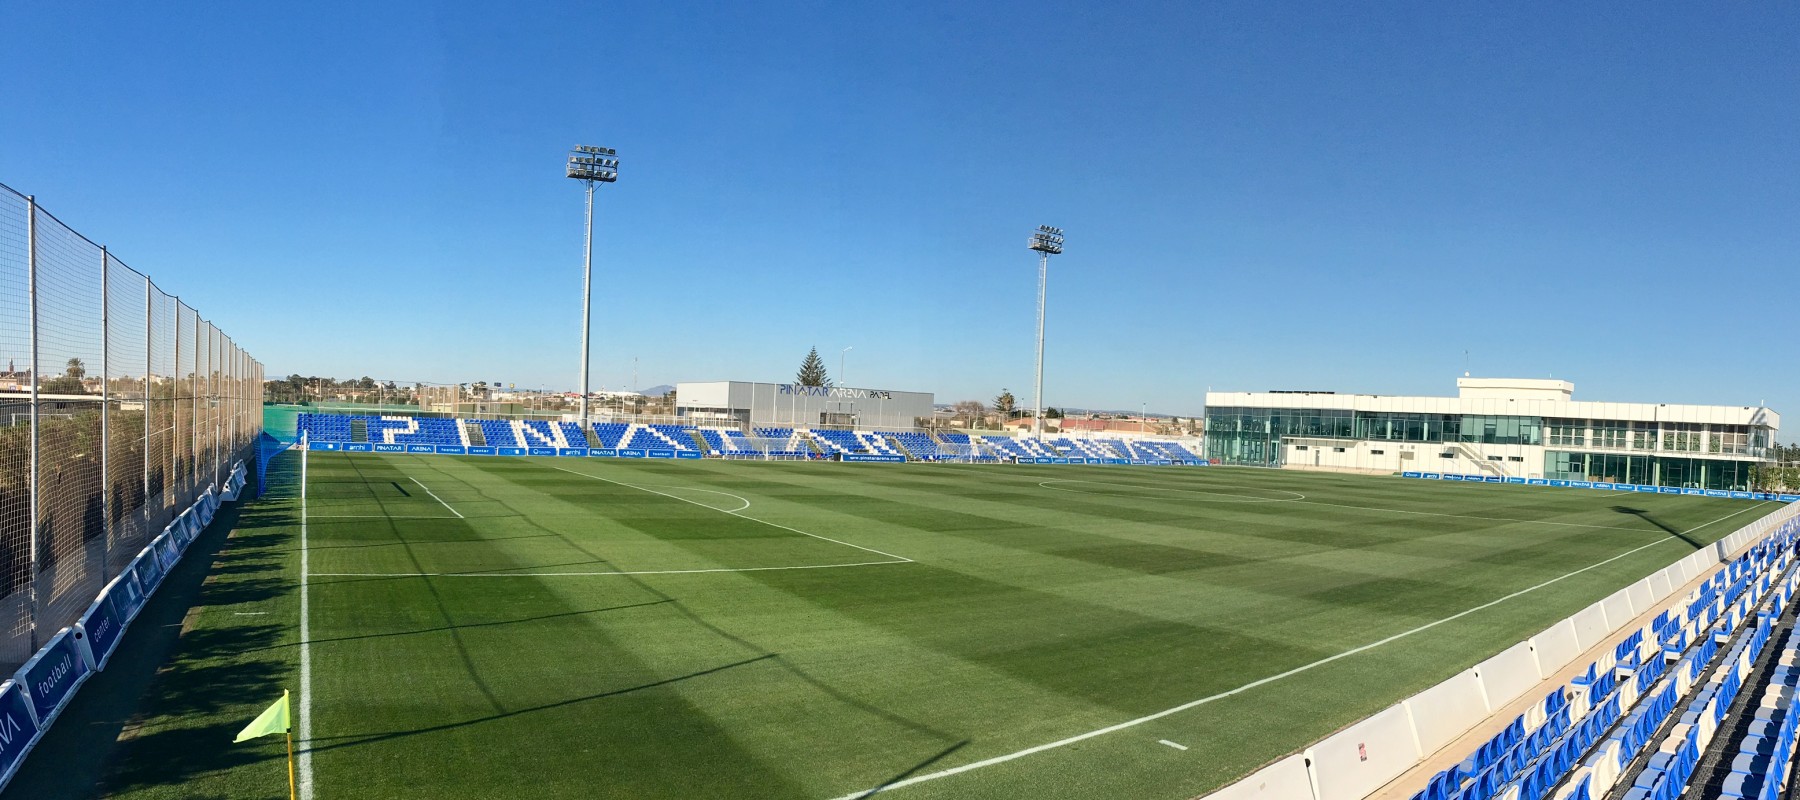 The main pitch of the Pinatar Arena, at San Pedro del Pinatar